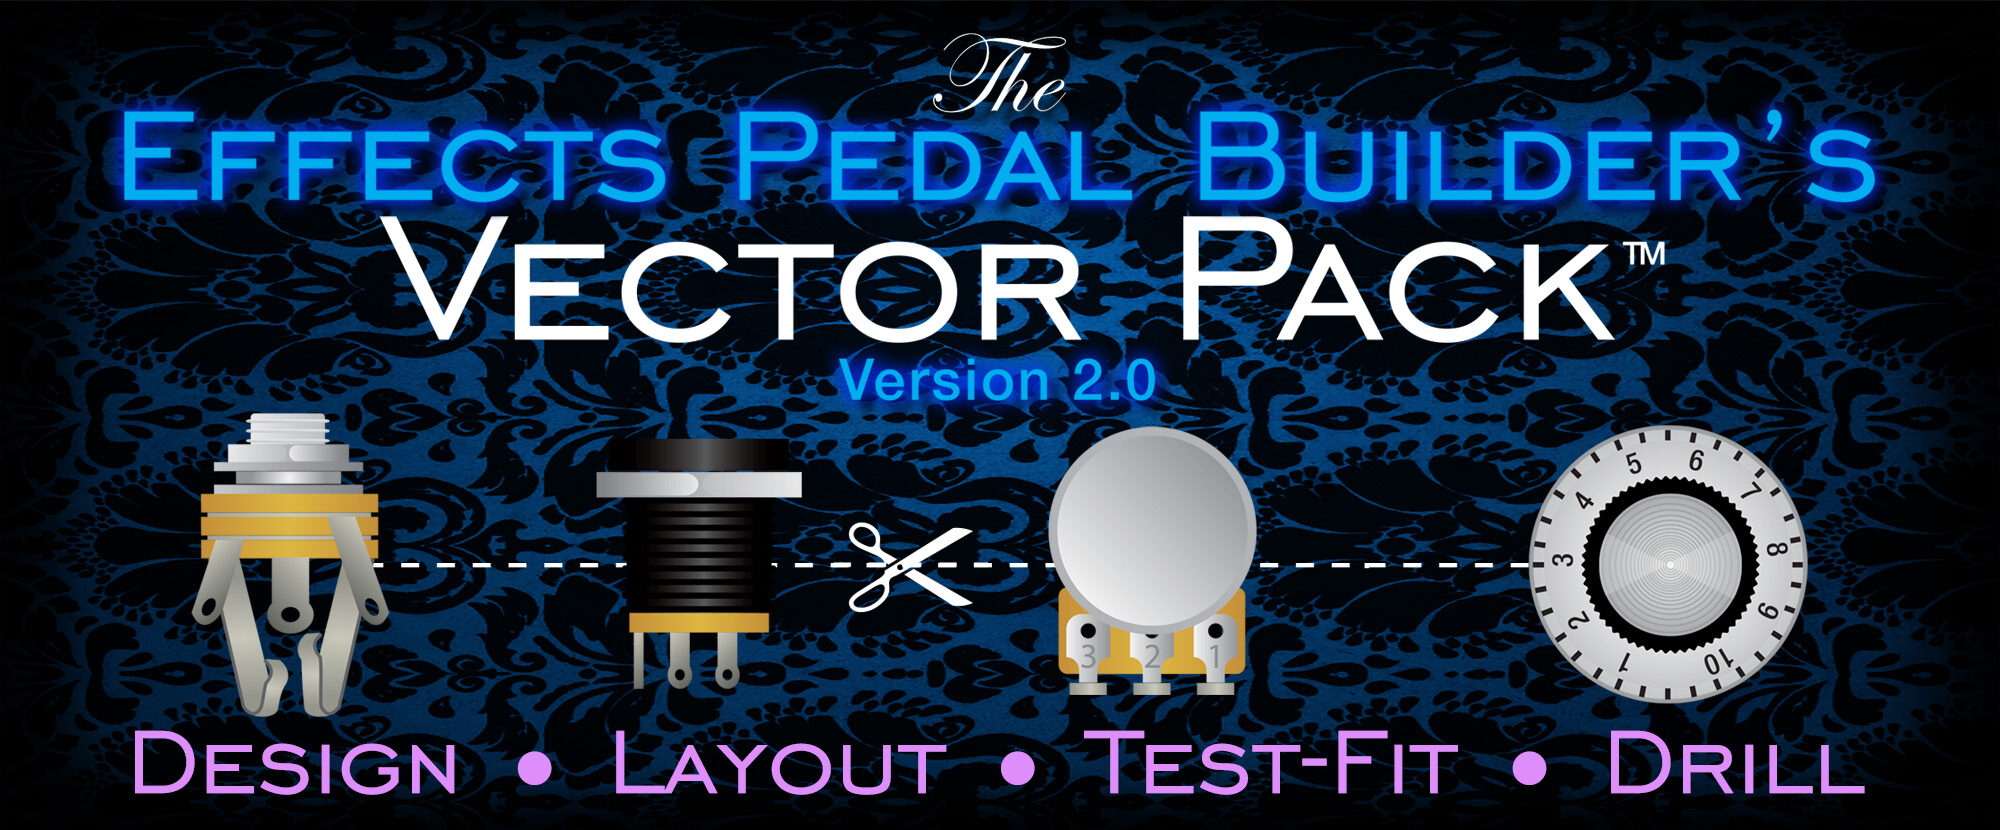 Vector Pack Cover Art no_bg